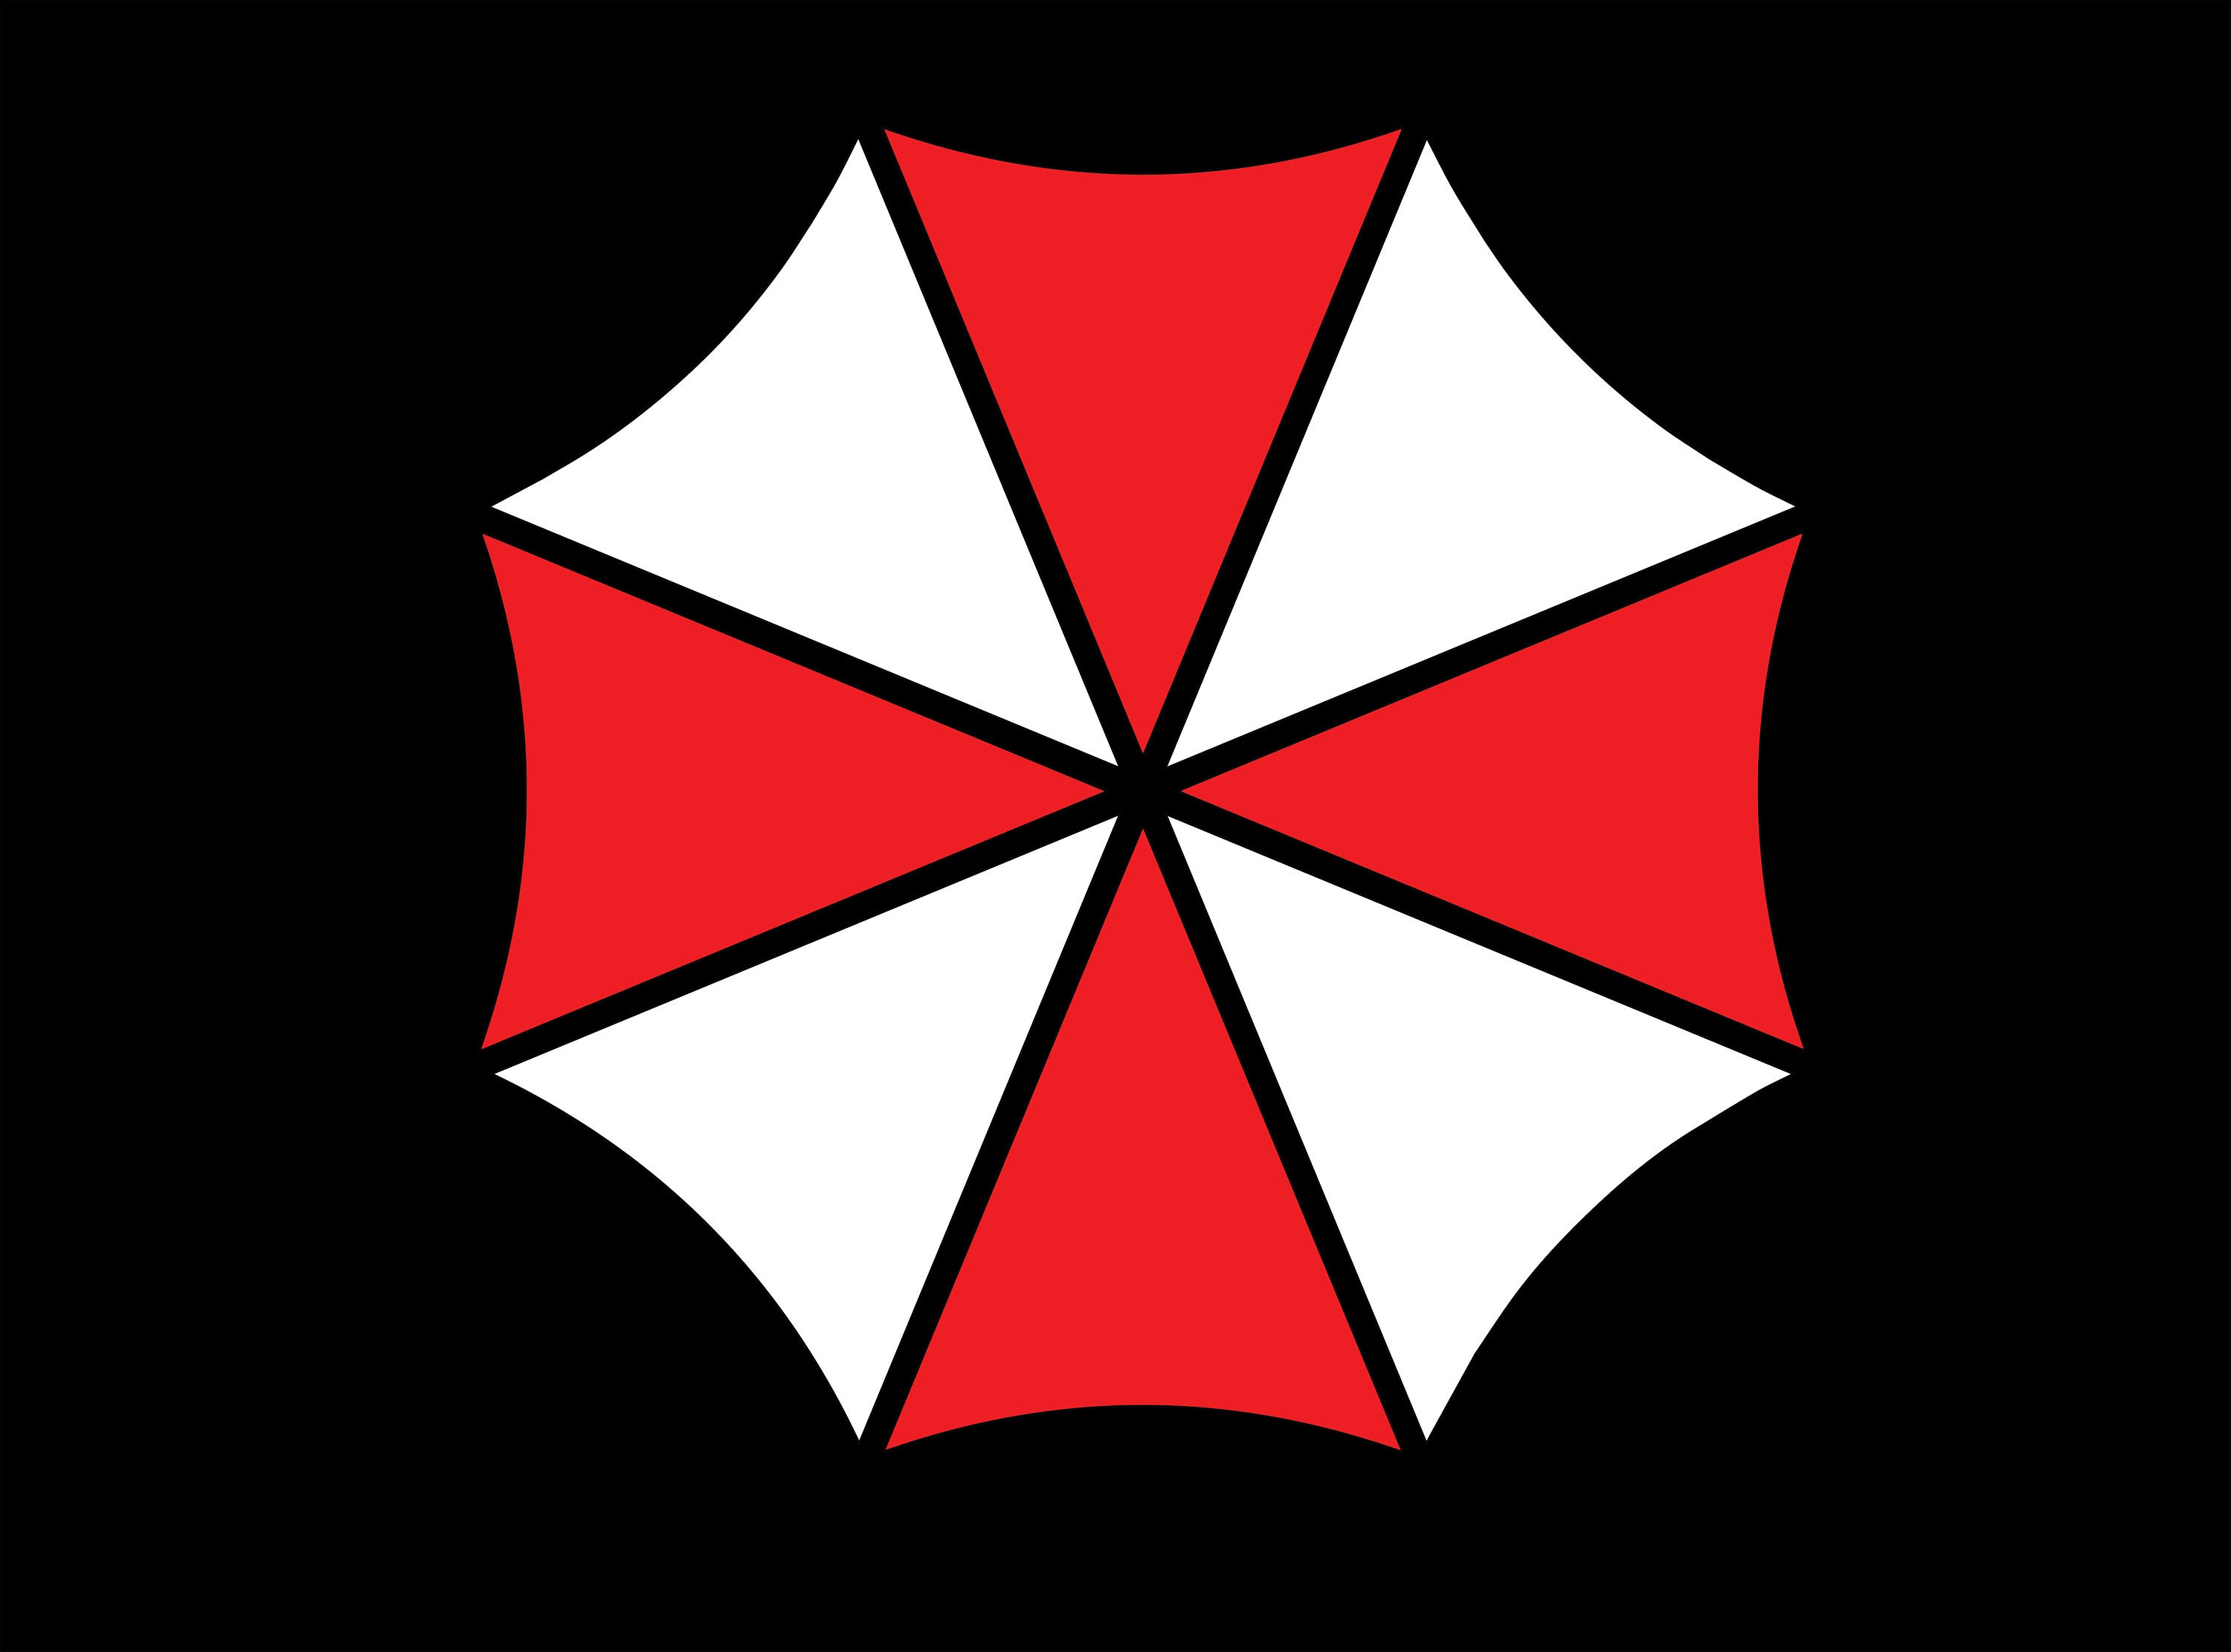 Resident Evil Umbrella Corporation Logo Digital Download, Instant Download,  Svg, Dxf, Eps & Png Files Included -  Israel